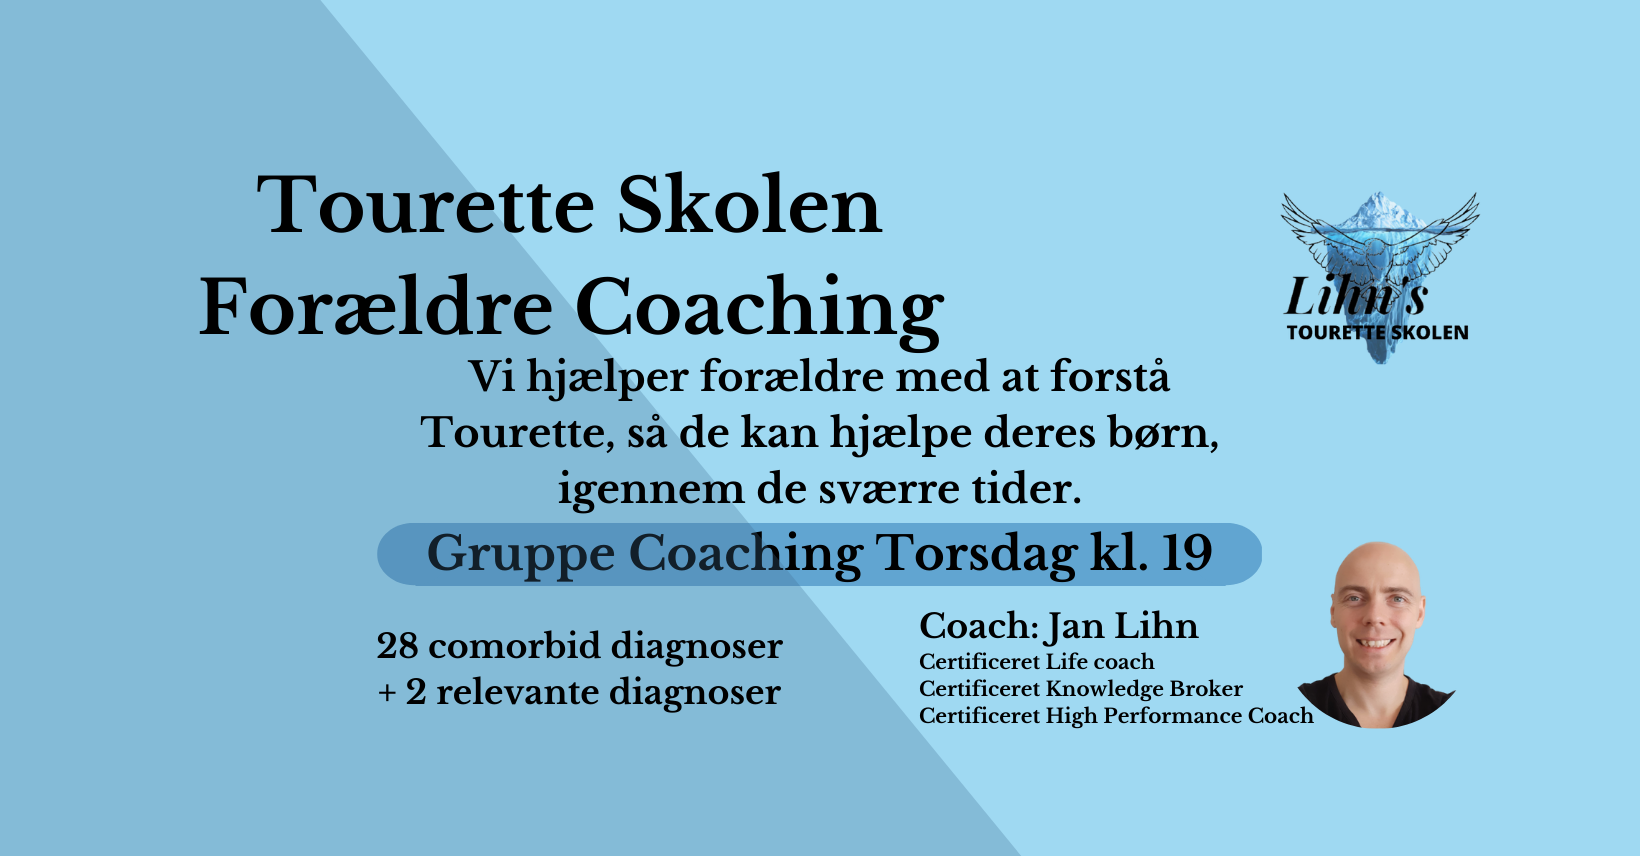 krydstogt føle Kirurgi Tourette skolen Forældre coaching (gruppe) - Lihn's Tourette skolen